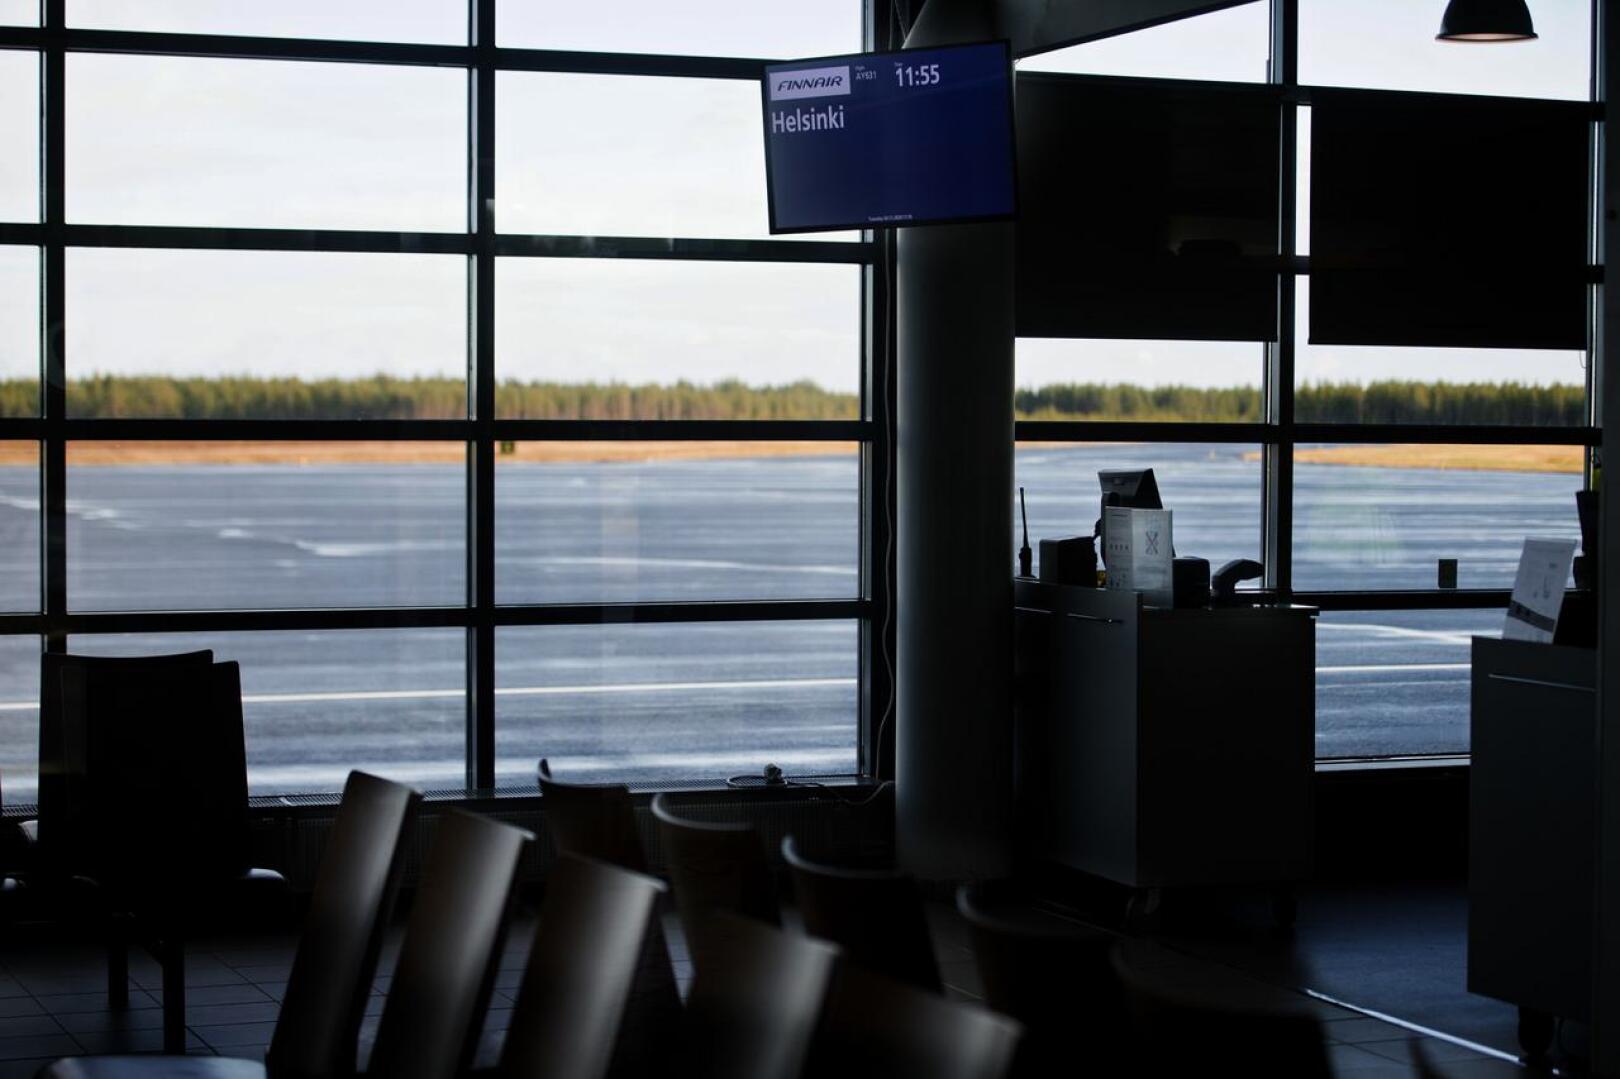 Hiljaista. Kokkola-Pietarsaaren lentoasemalta lennettiin ensimmäisen kerran pitkään aikaan marraskuun alussa. Matkustajamäärät ovat alkuvuoden aikana olleet hyvin pienet.